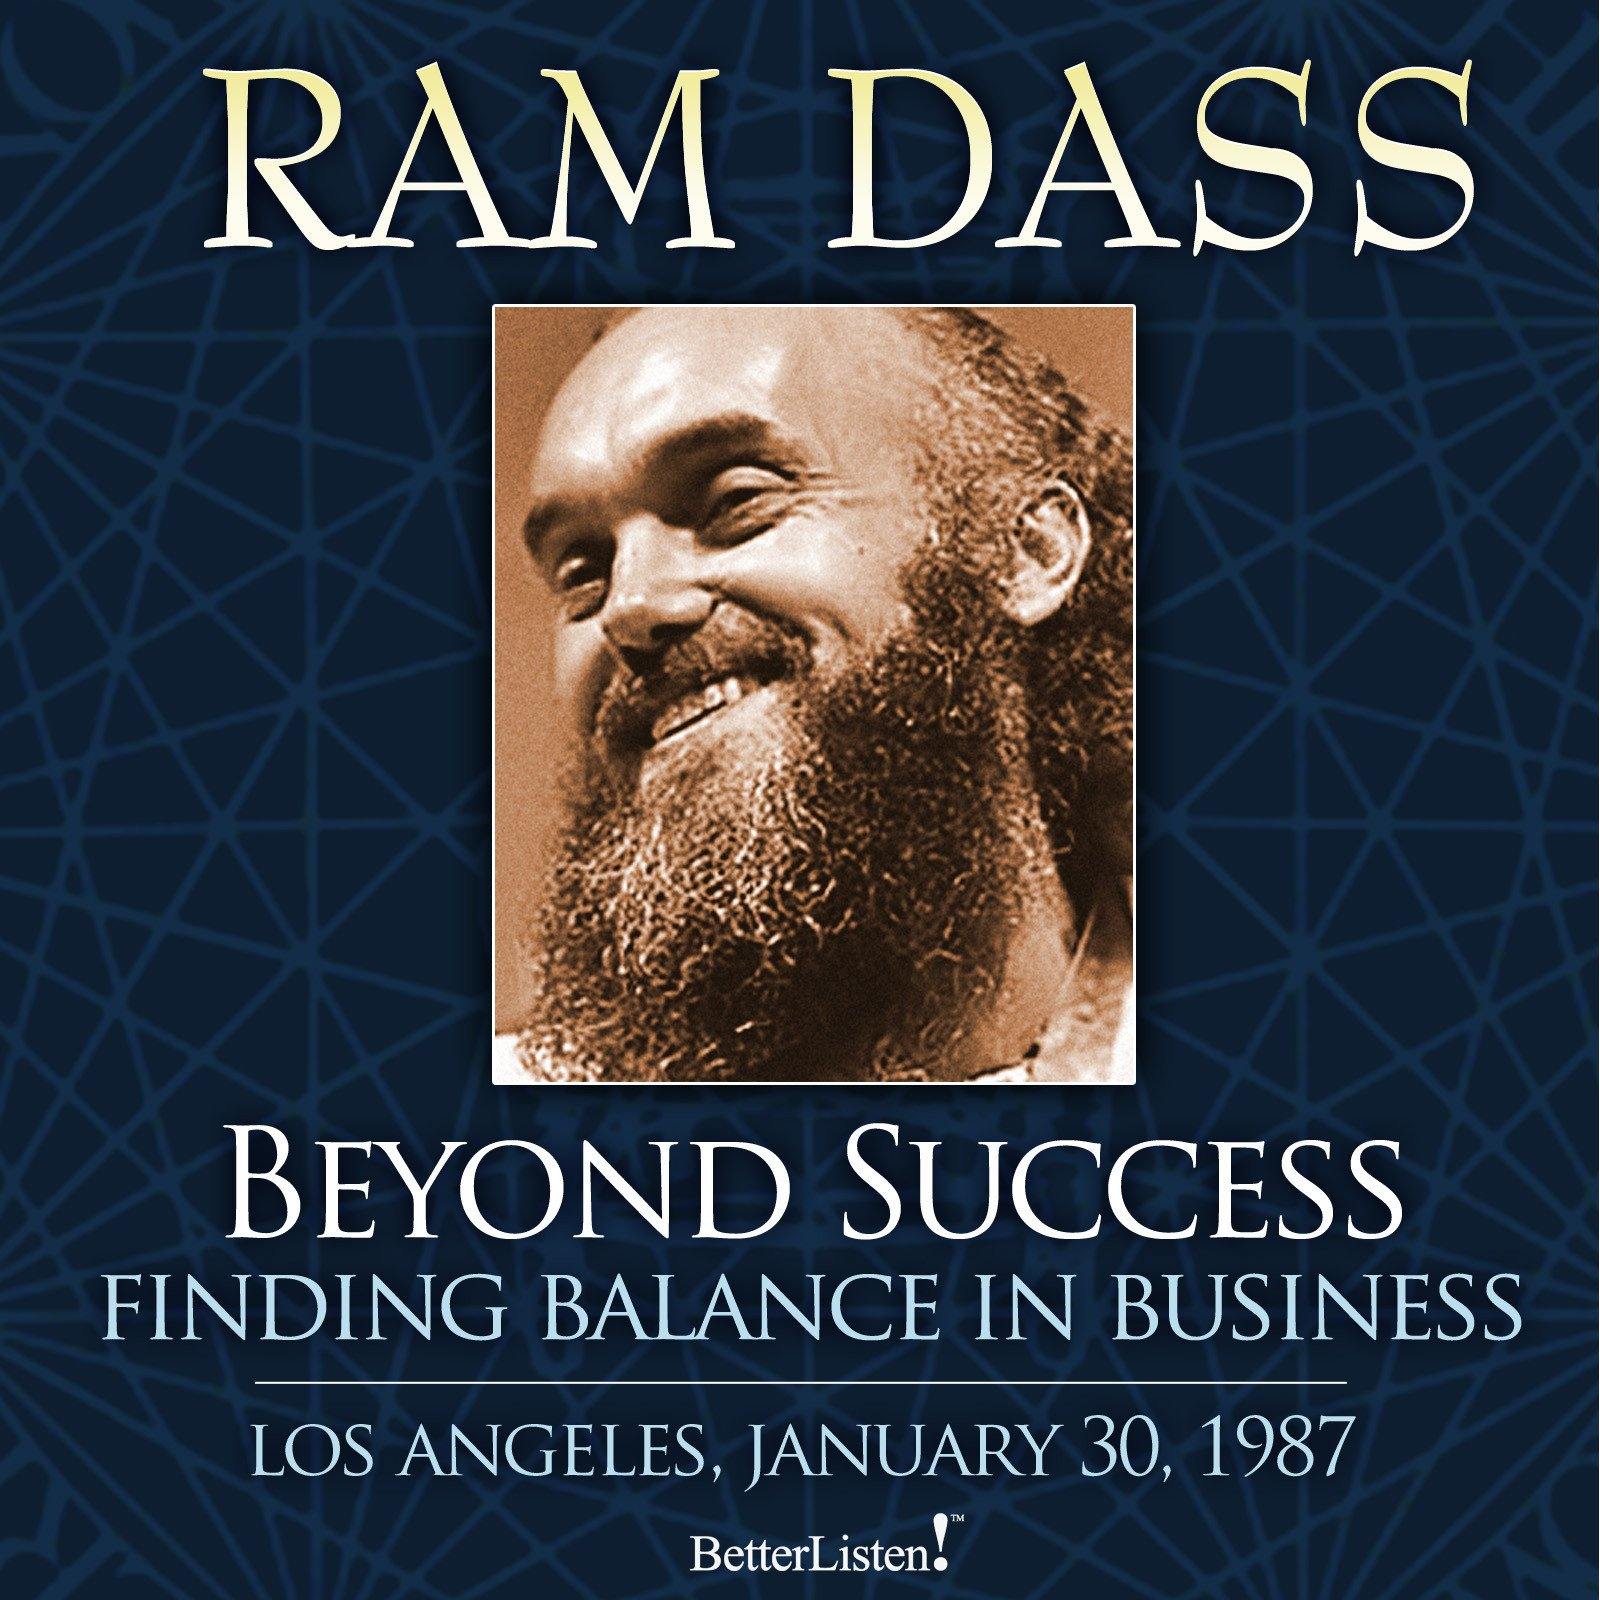 Beyond Success: Finding Balance in Business with Ram Dass Audio Program BetterListen! - BetterListen!